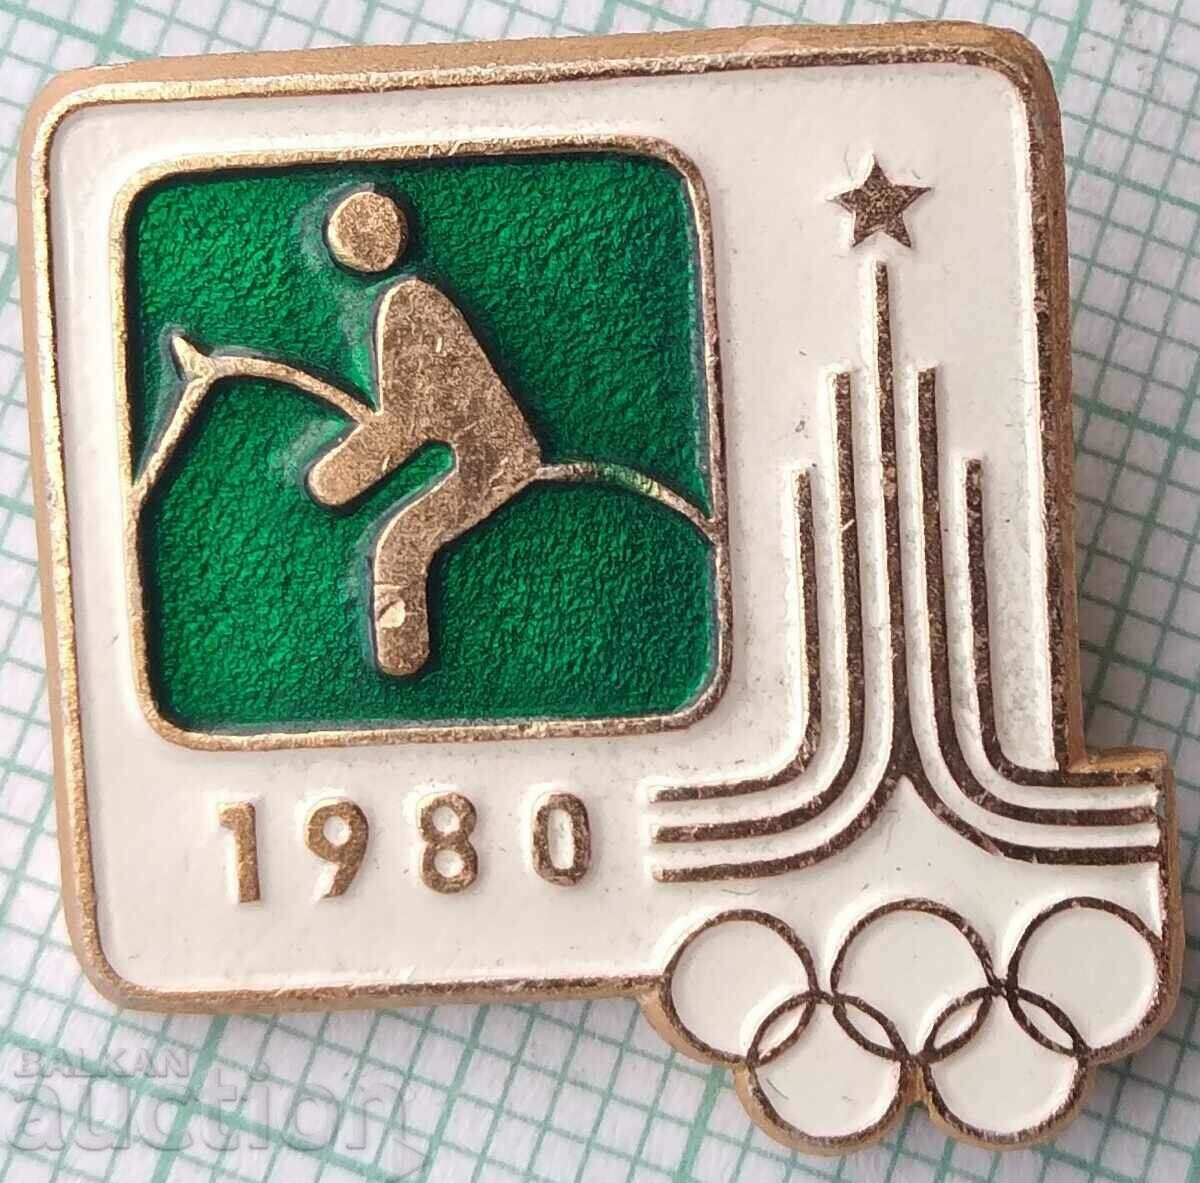 Σήμα 13240 - Ολυμπιακοί Αγώνες Μόσχα 1980